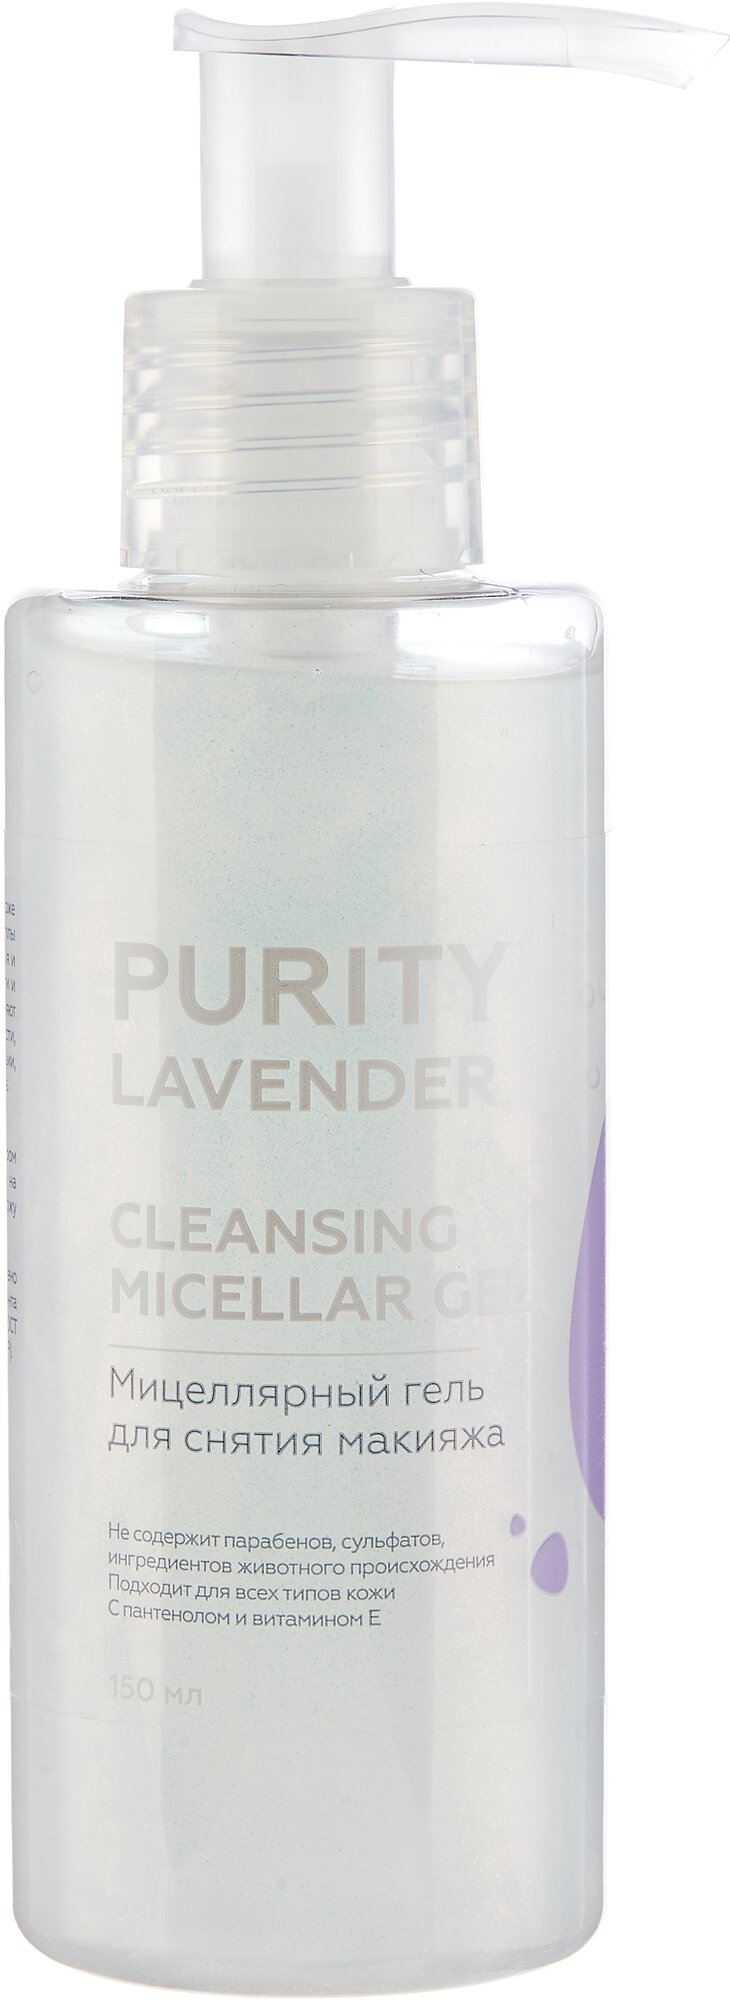 PURITY LAVENDER Cleansing micellar gel Мицеллярный гель для снятия макияжа 150 мл